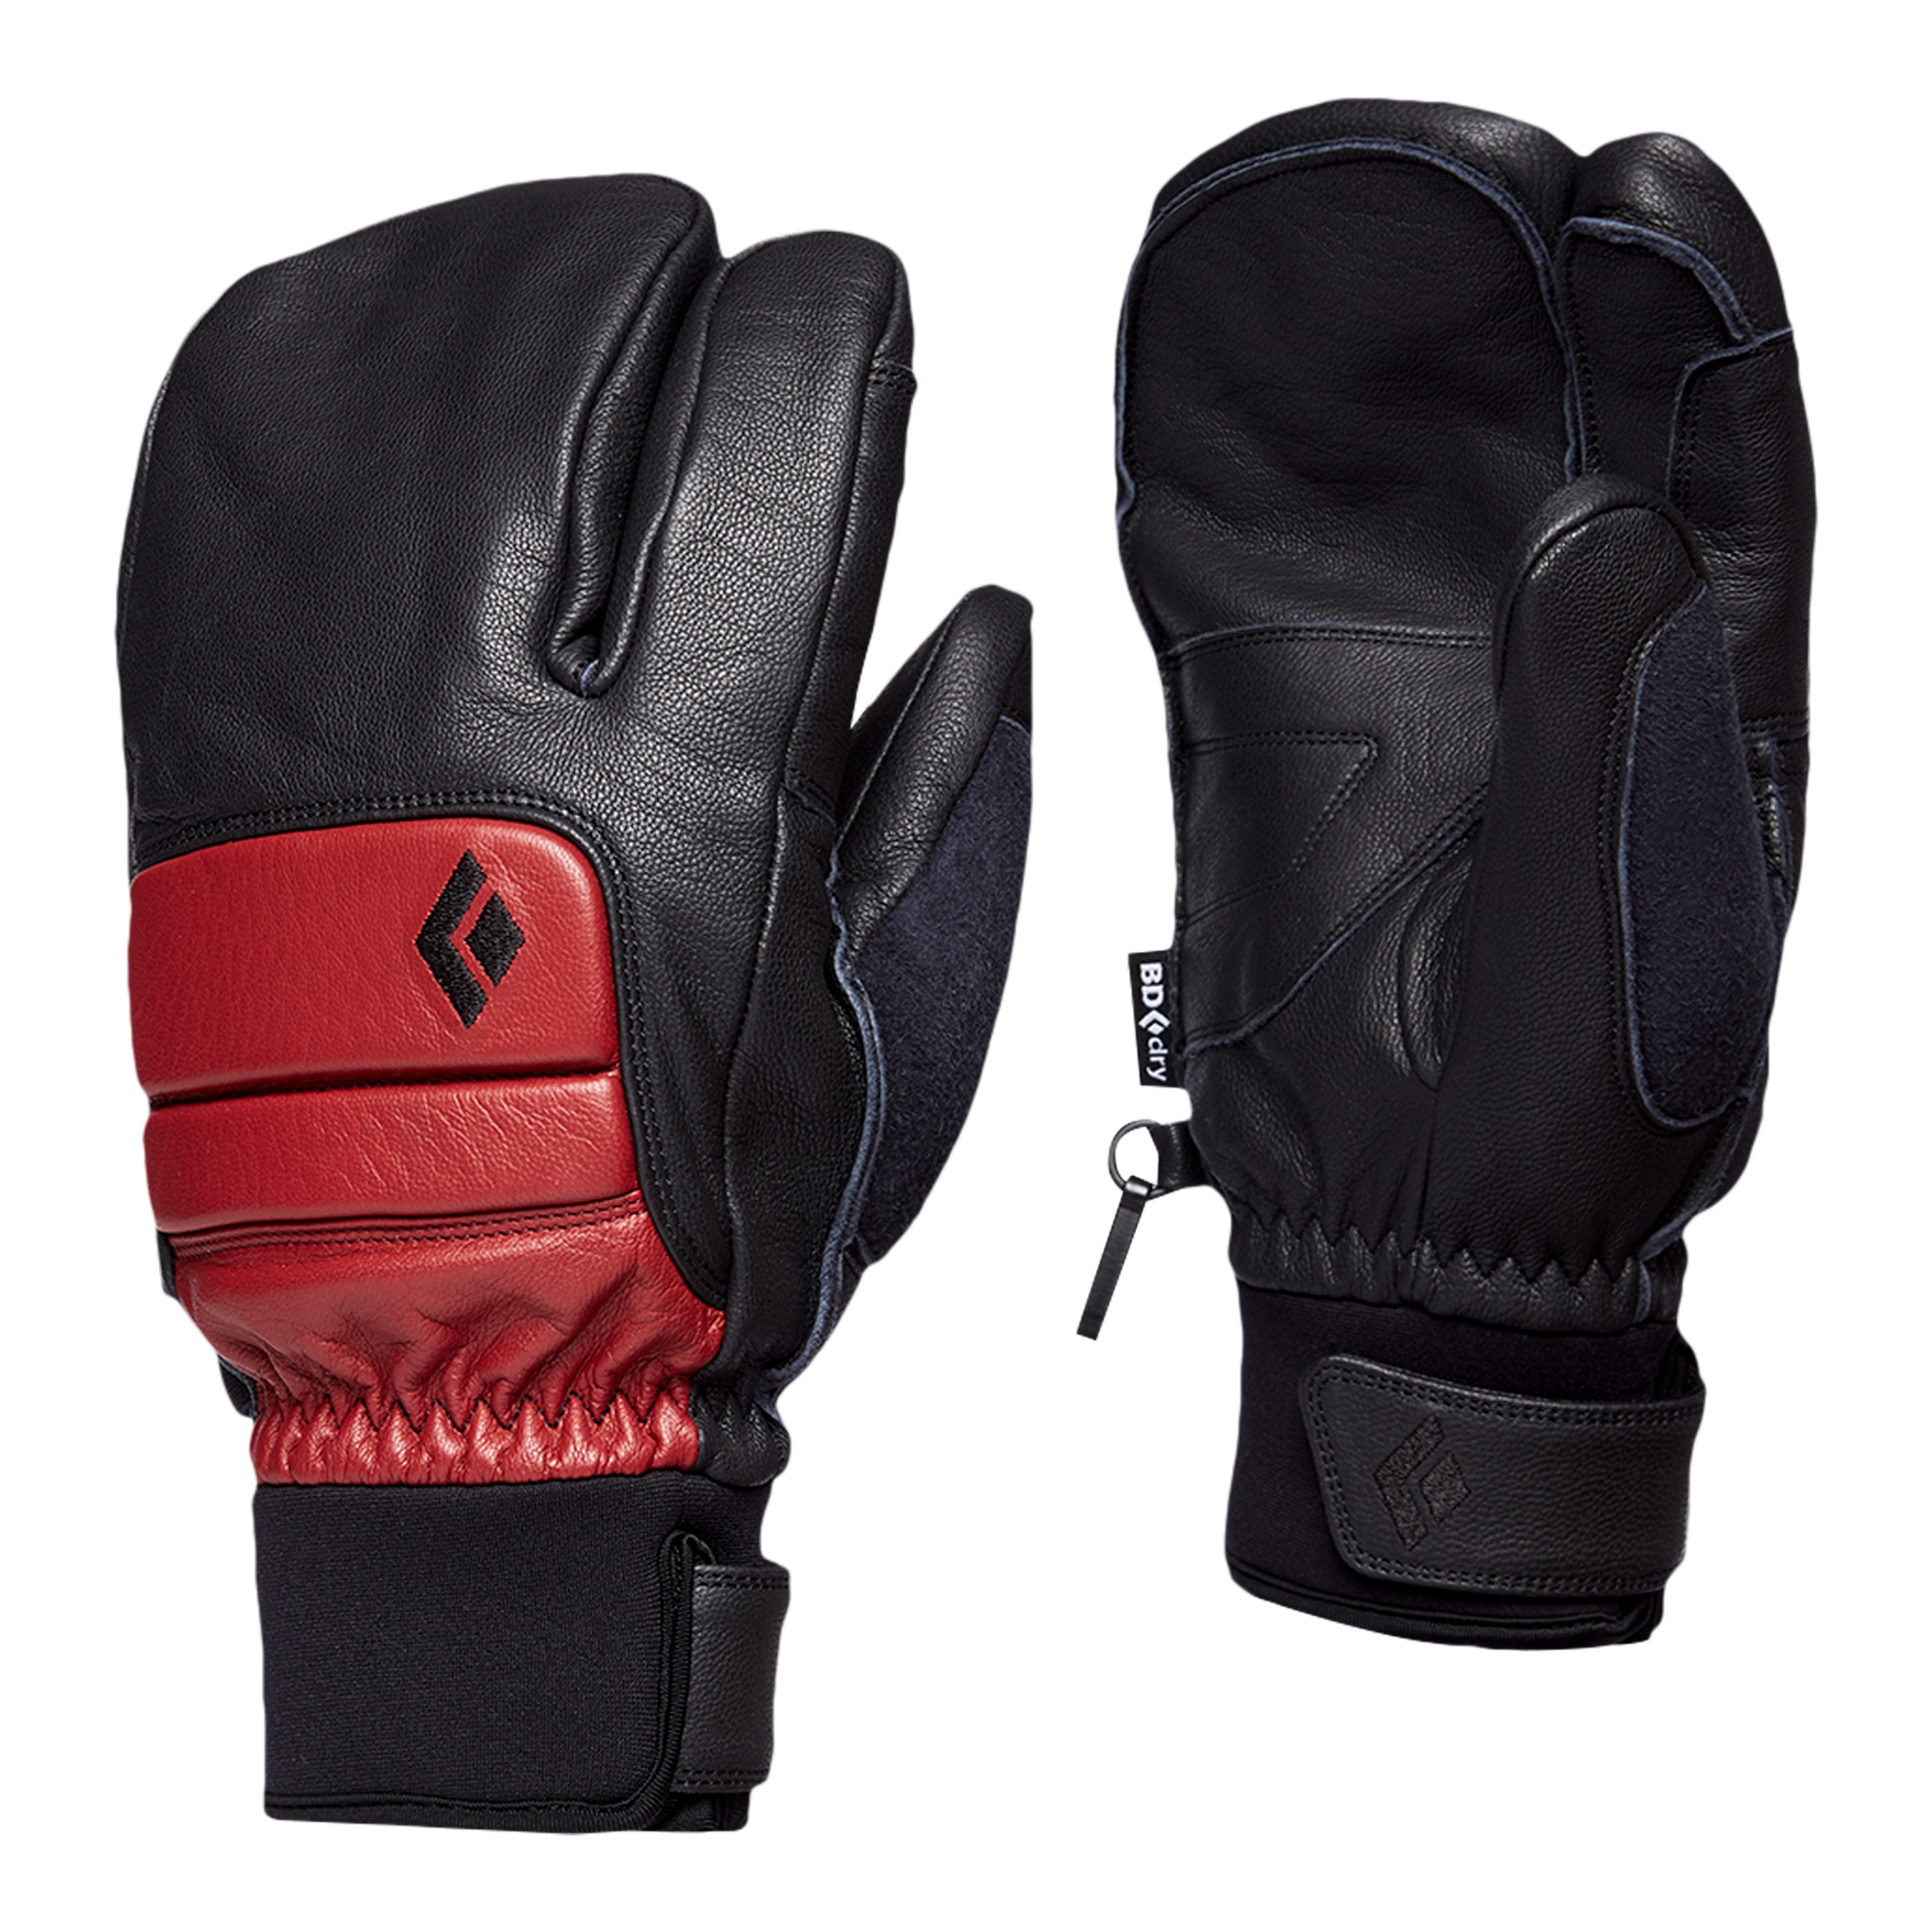 Black Diamond Equipment Men's Spark Finger Gloves, Small Dark Crimson